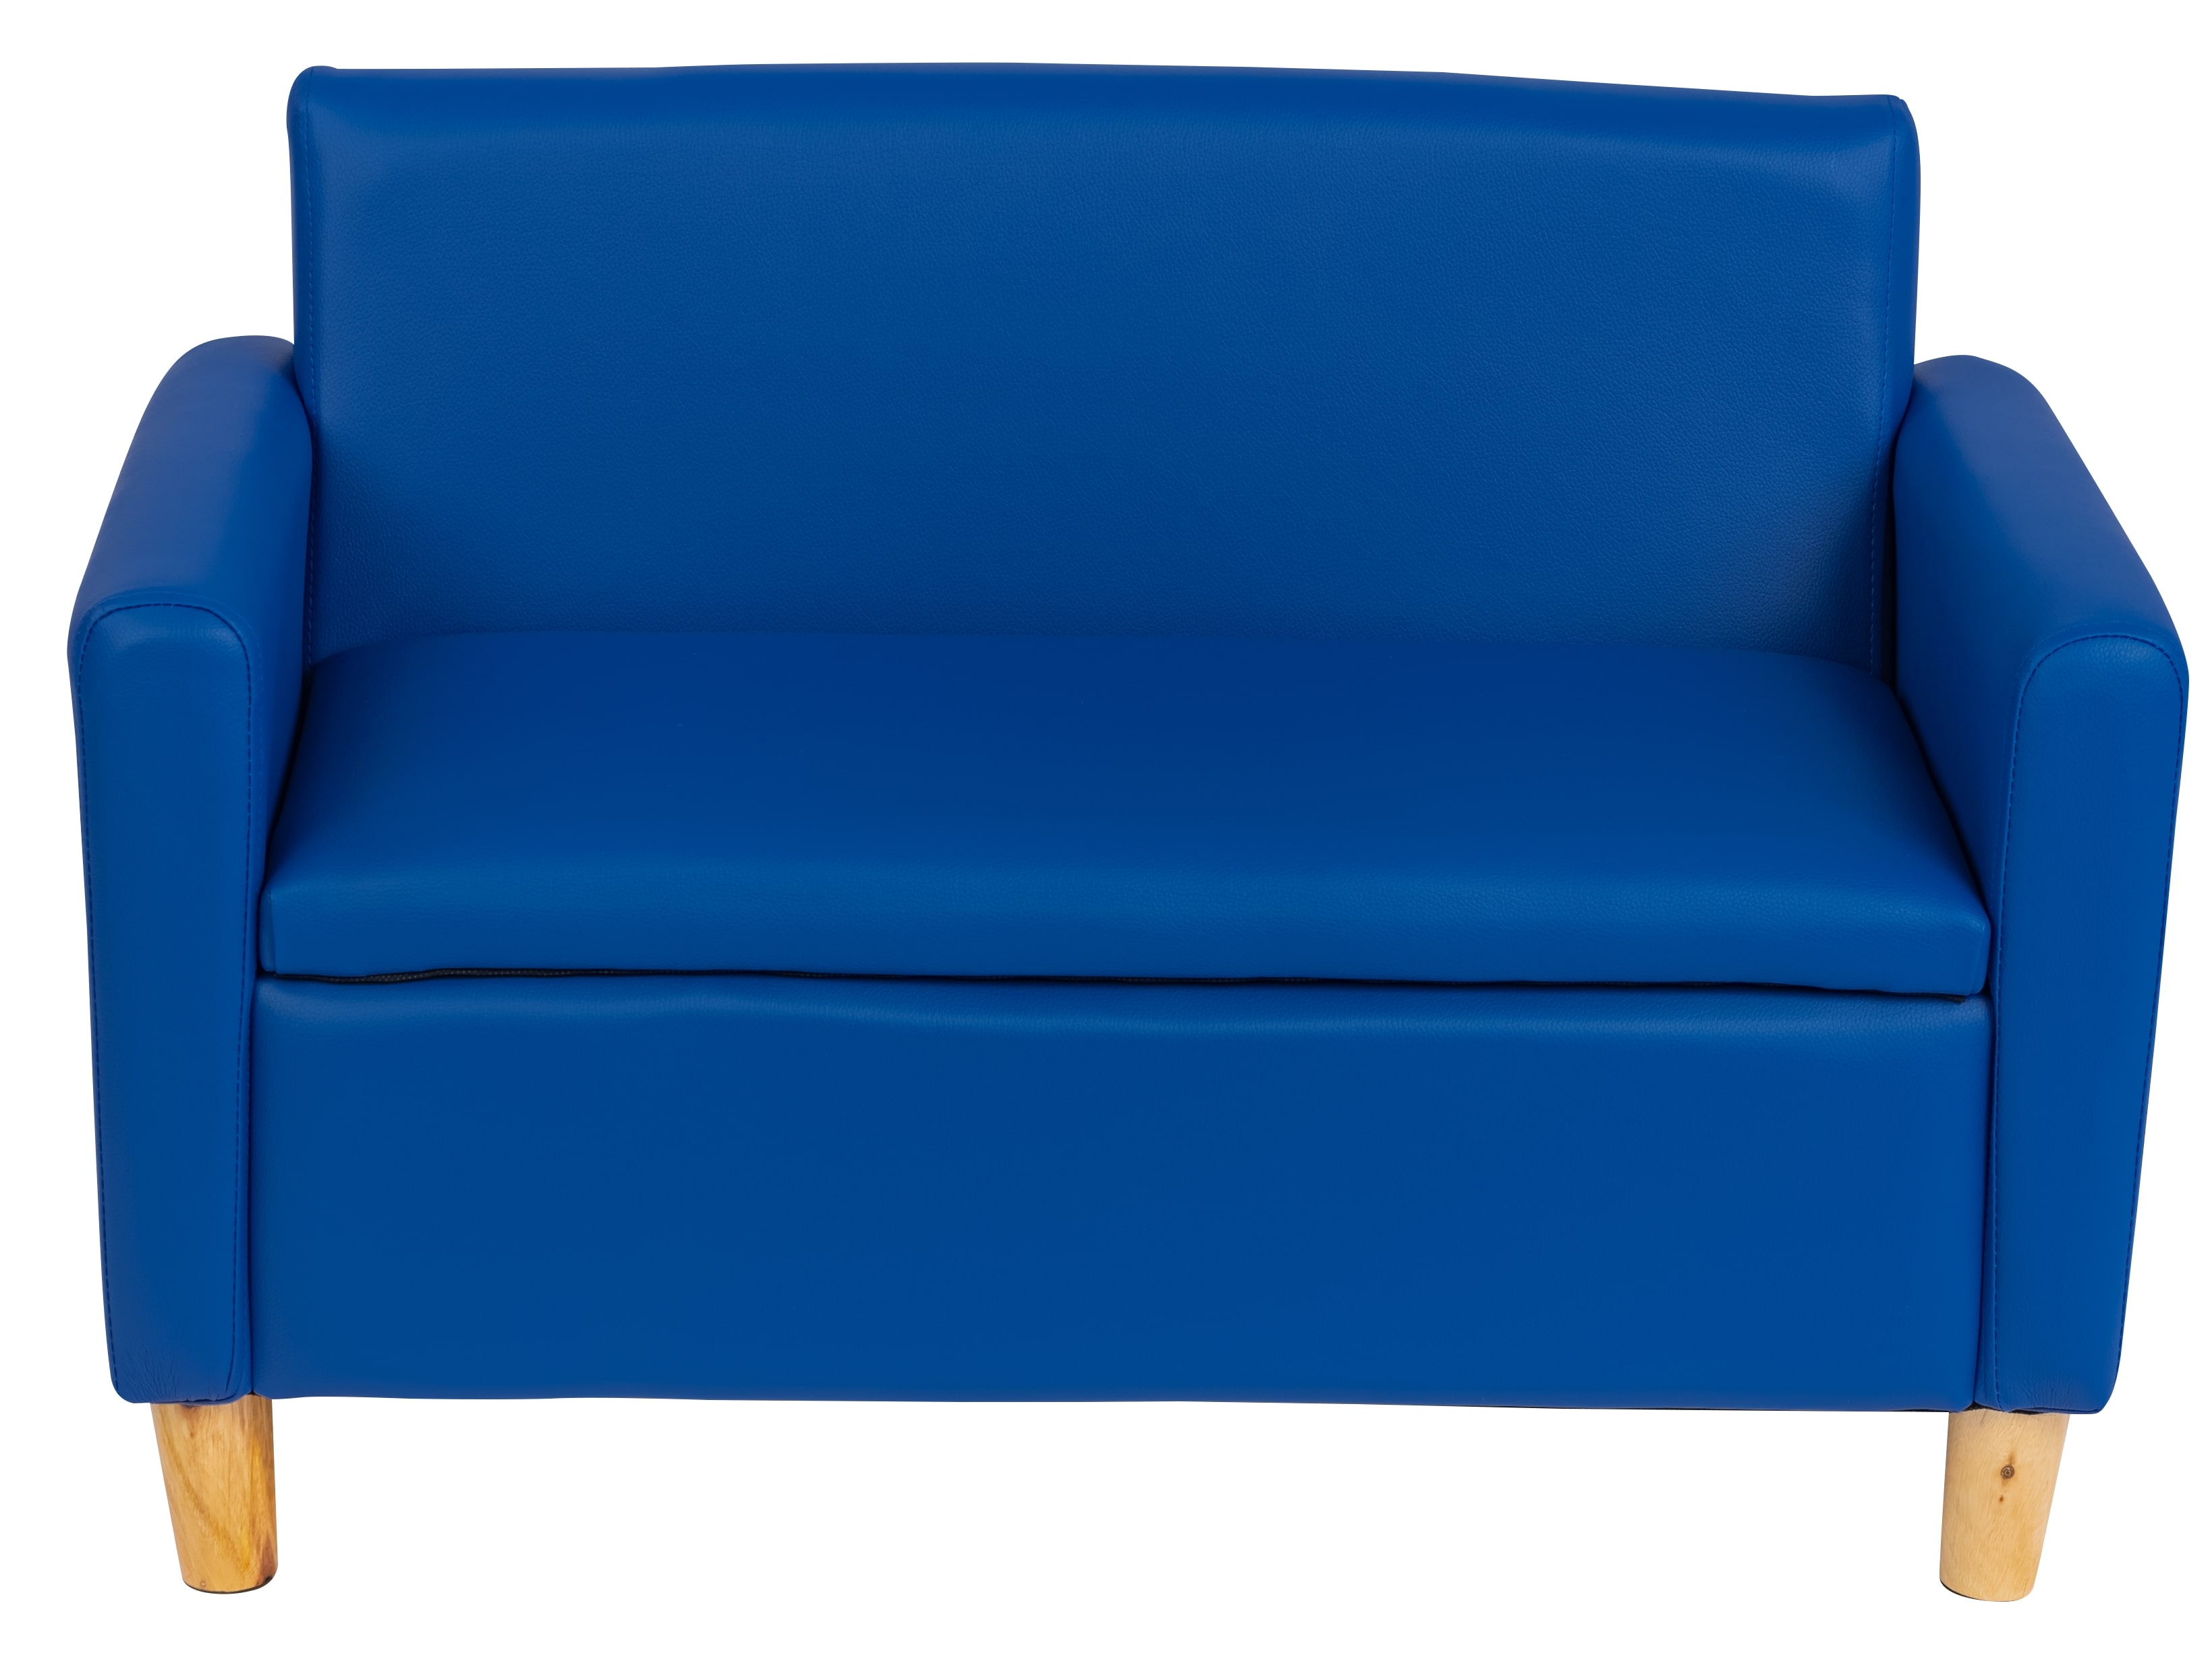 ספה כולל ארגז אחסון בצבע כחול לחדר ילדים